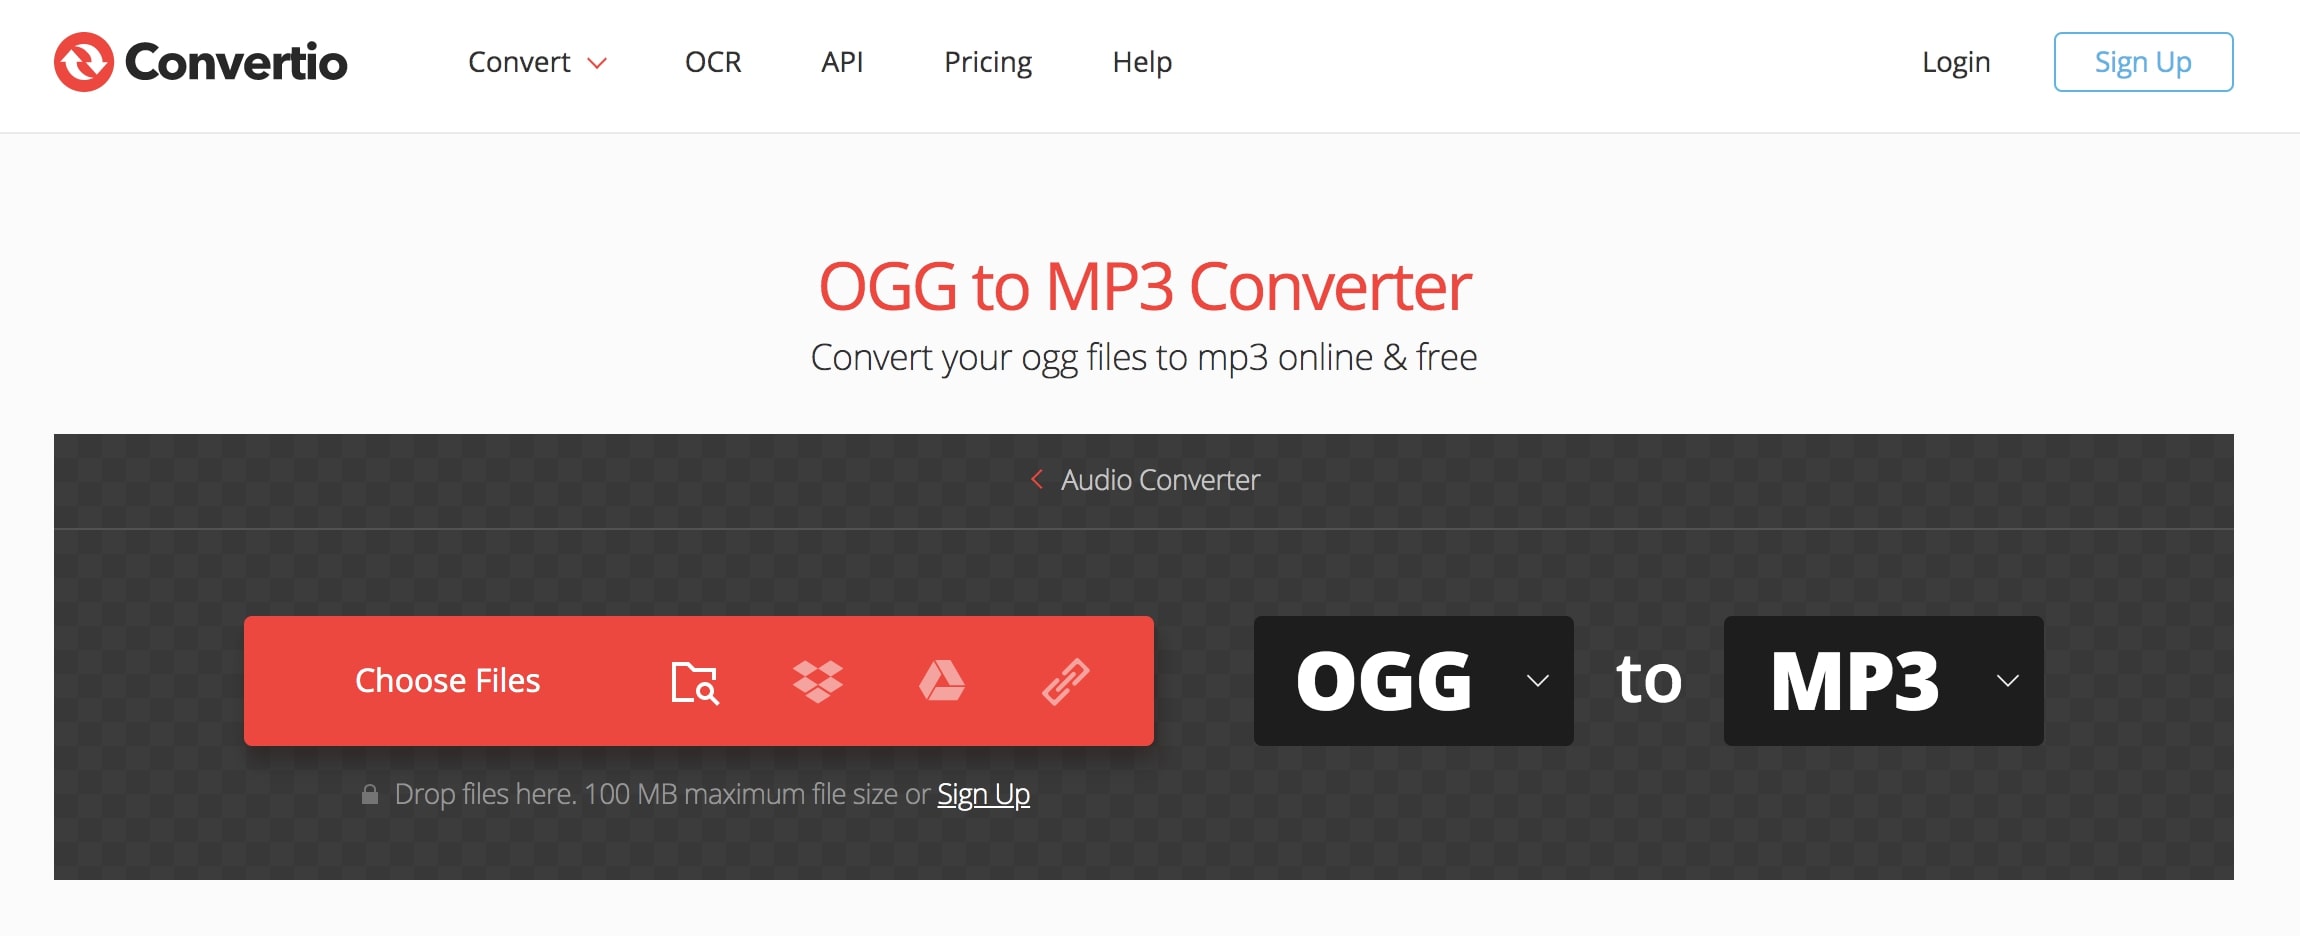  convert-ogg-to-mp3-convertio 